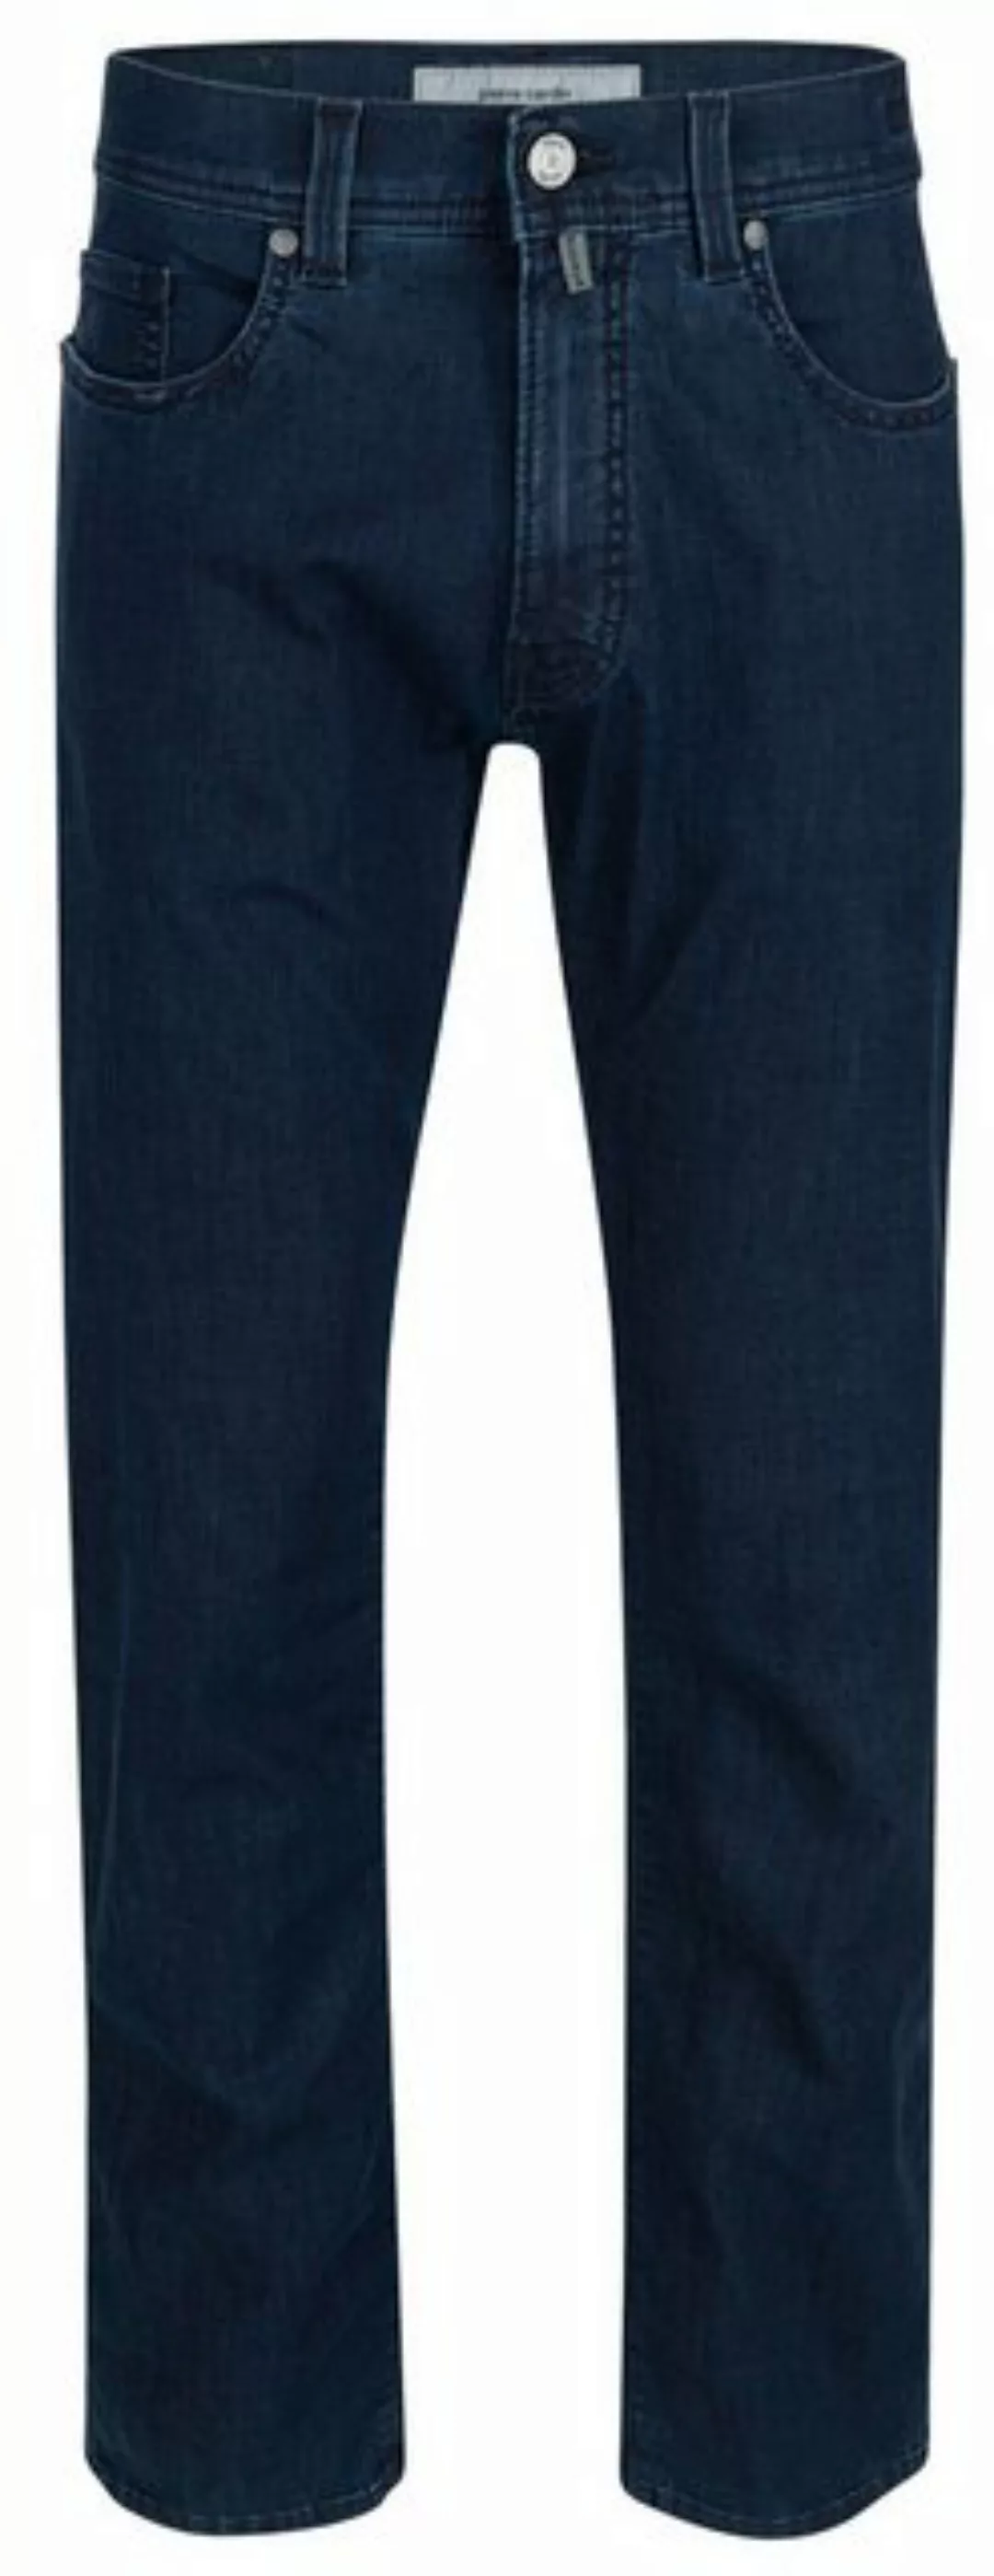 Pierre Cardin 5-Pocket-Jeans PIERRE CARDIN LYON TAPERED blue/black stonewas günstig online kaufen